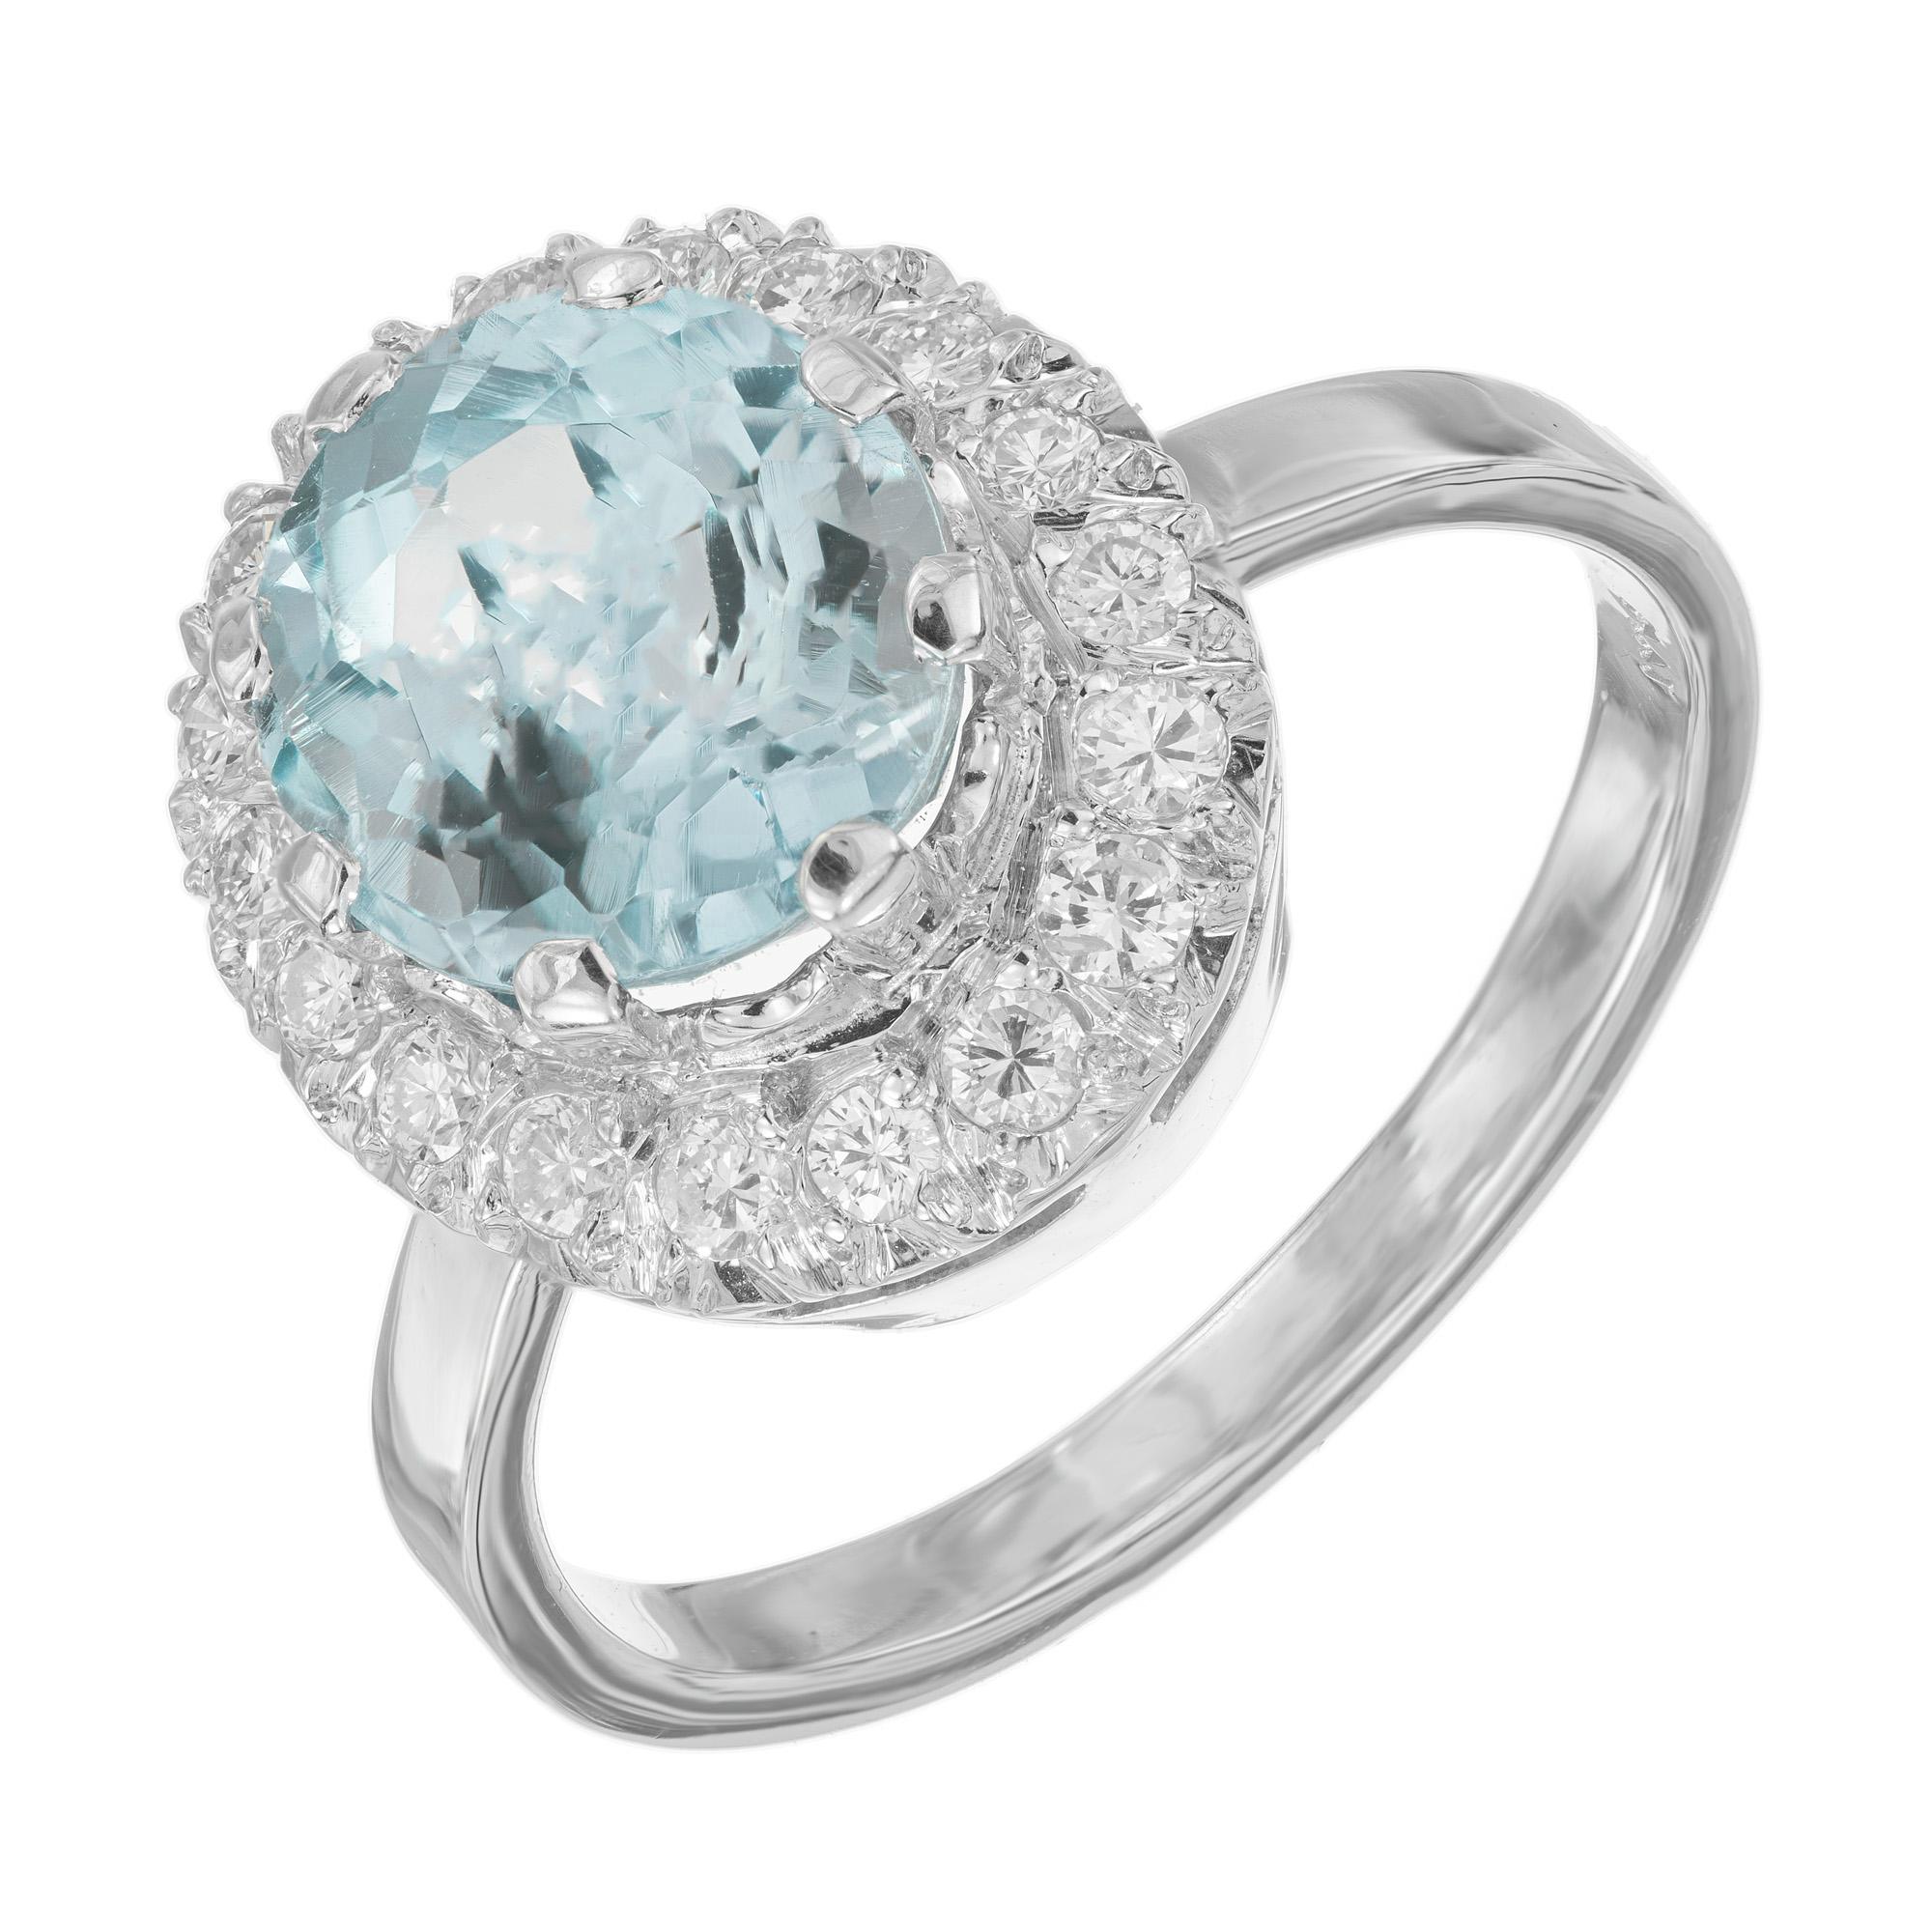 Vintage 1950's oval Aquamarin Diamant Weißgold Halo Ring. Das Herzstück dieses Rings ist ein ovaler Aquamarin von 2,3 Karat, der für seinen fesselnden blauen Farbton bekannt ist. Der Aquamarin ist in einer Platinfassung gefasst und von einem Halo